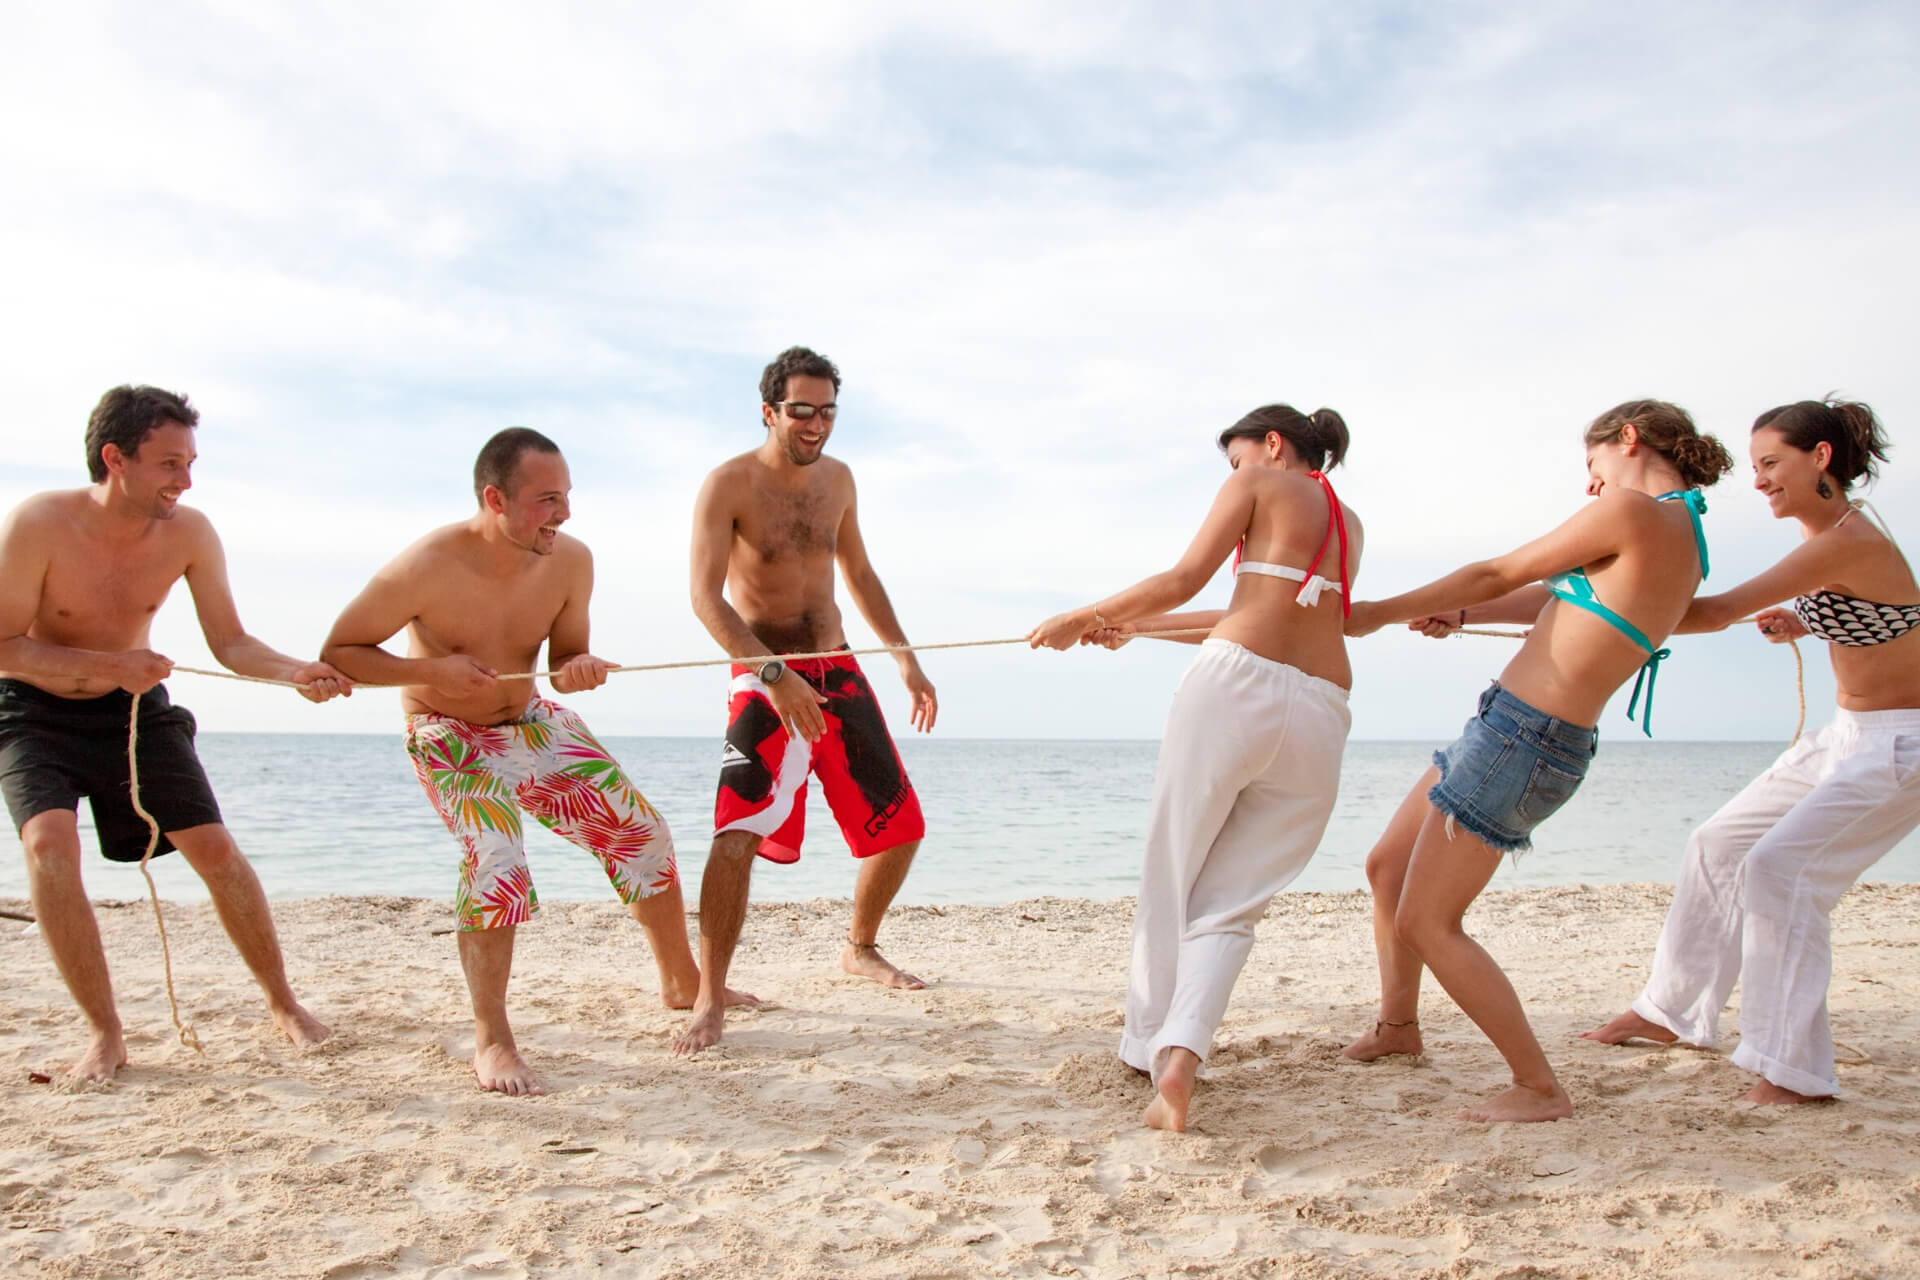 Конкурс мужчины против женщин. Перетягивание каната на пляже. Игры на пляже. Летние игры на пляже. Друзья на пляже.